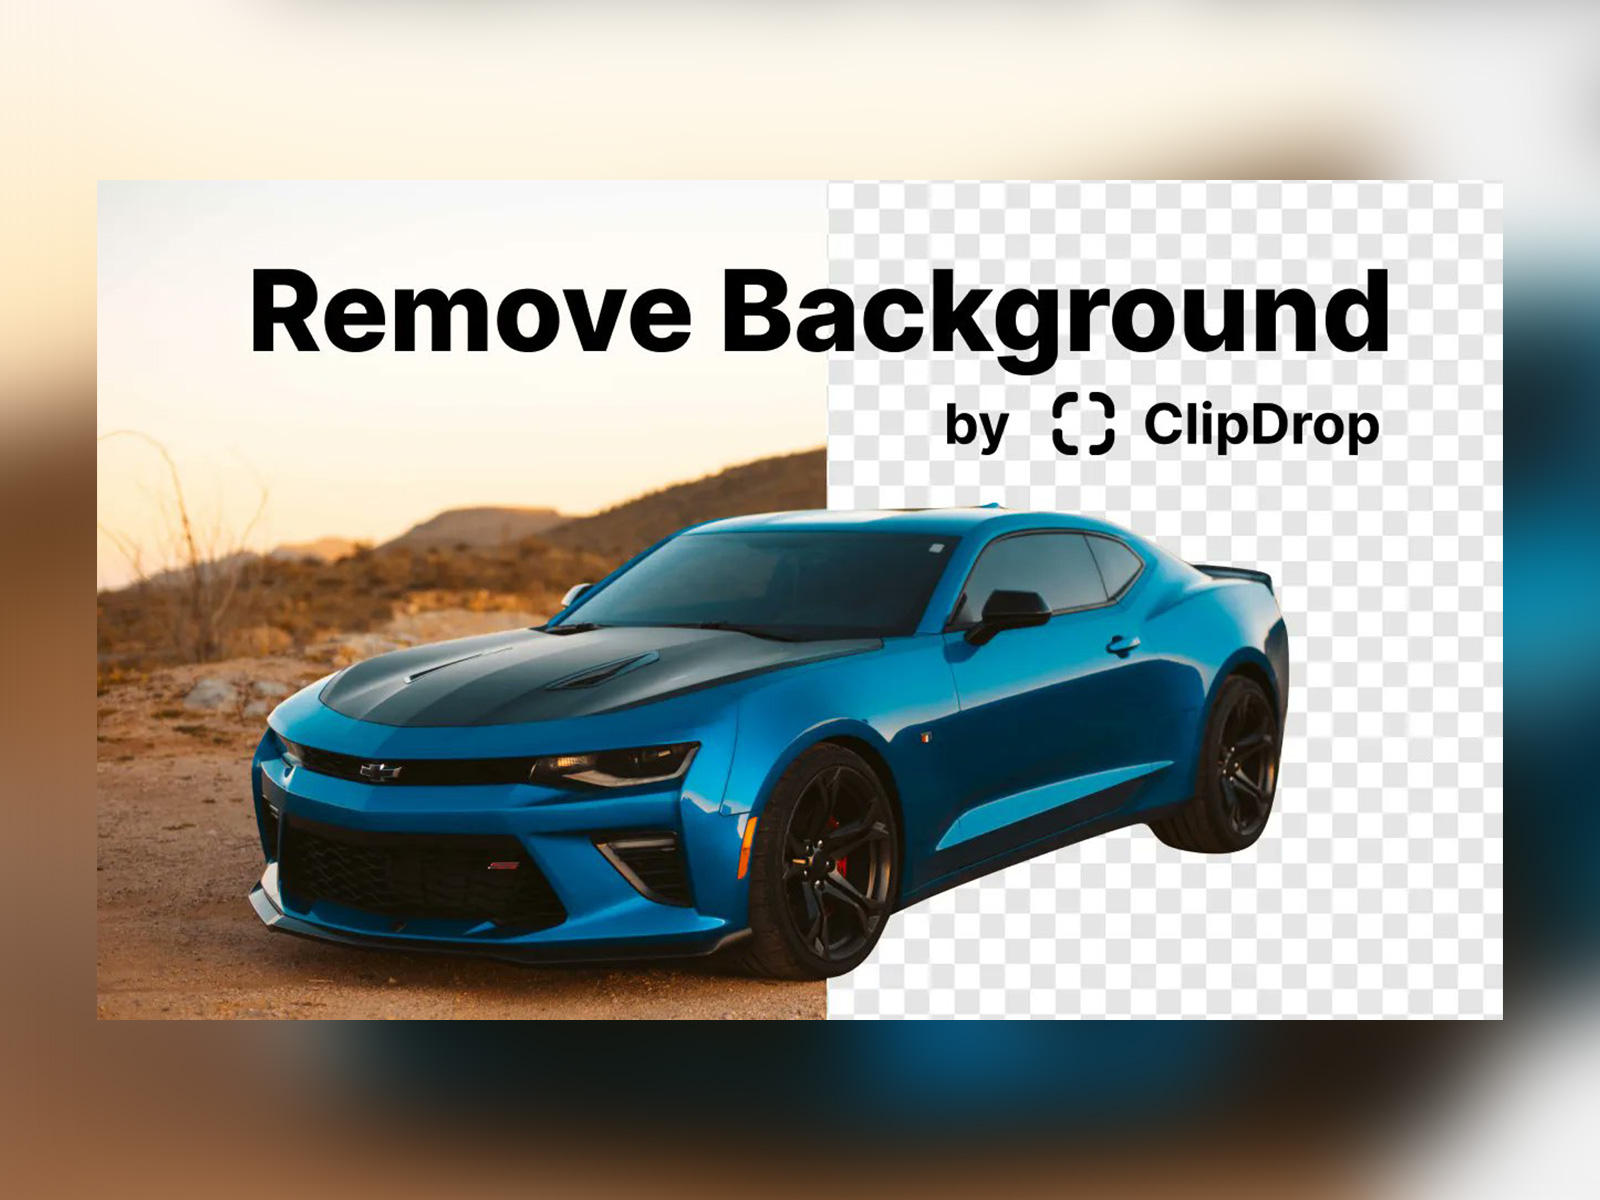 Clipdrop - Remove background